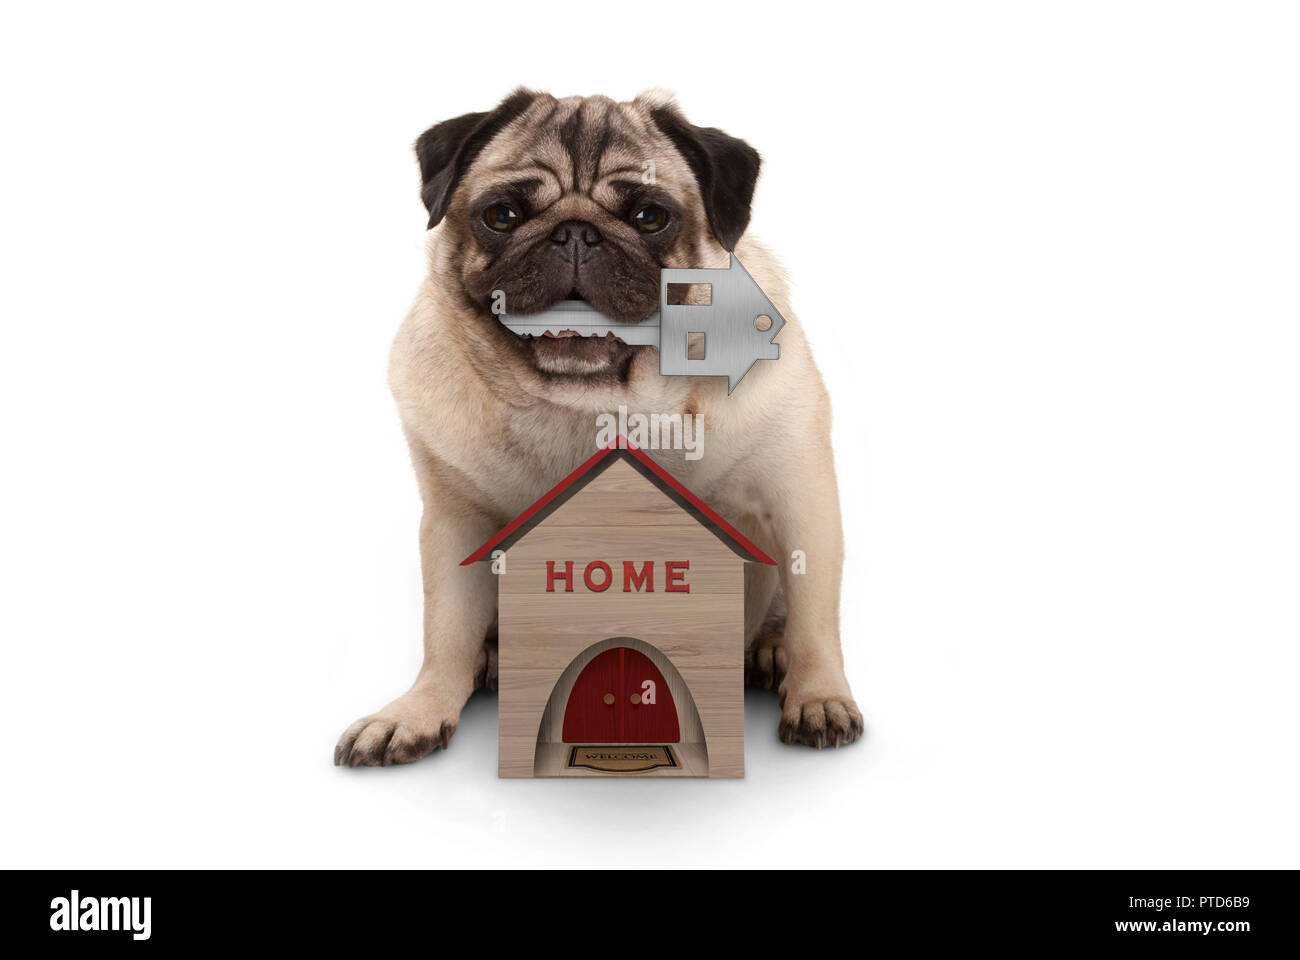 Happy dog puppy pug avec clé de la maison s'asseyant avec miniature house, isolé sur fond blanc Banque D'Images